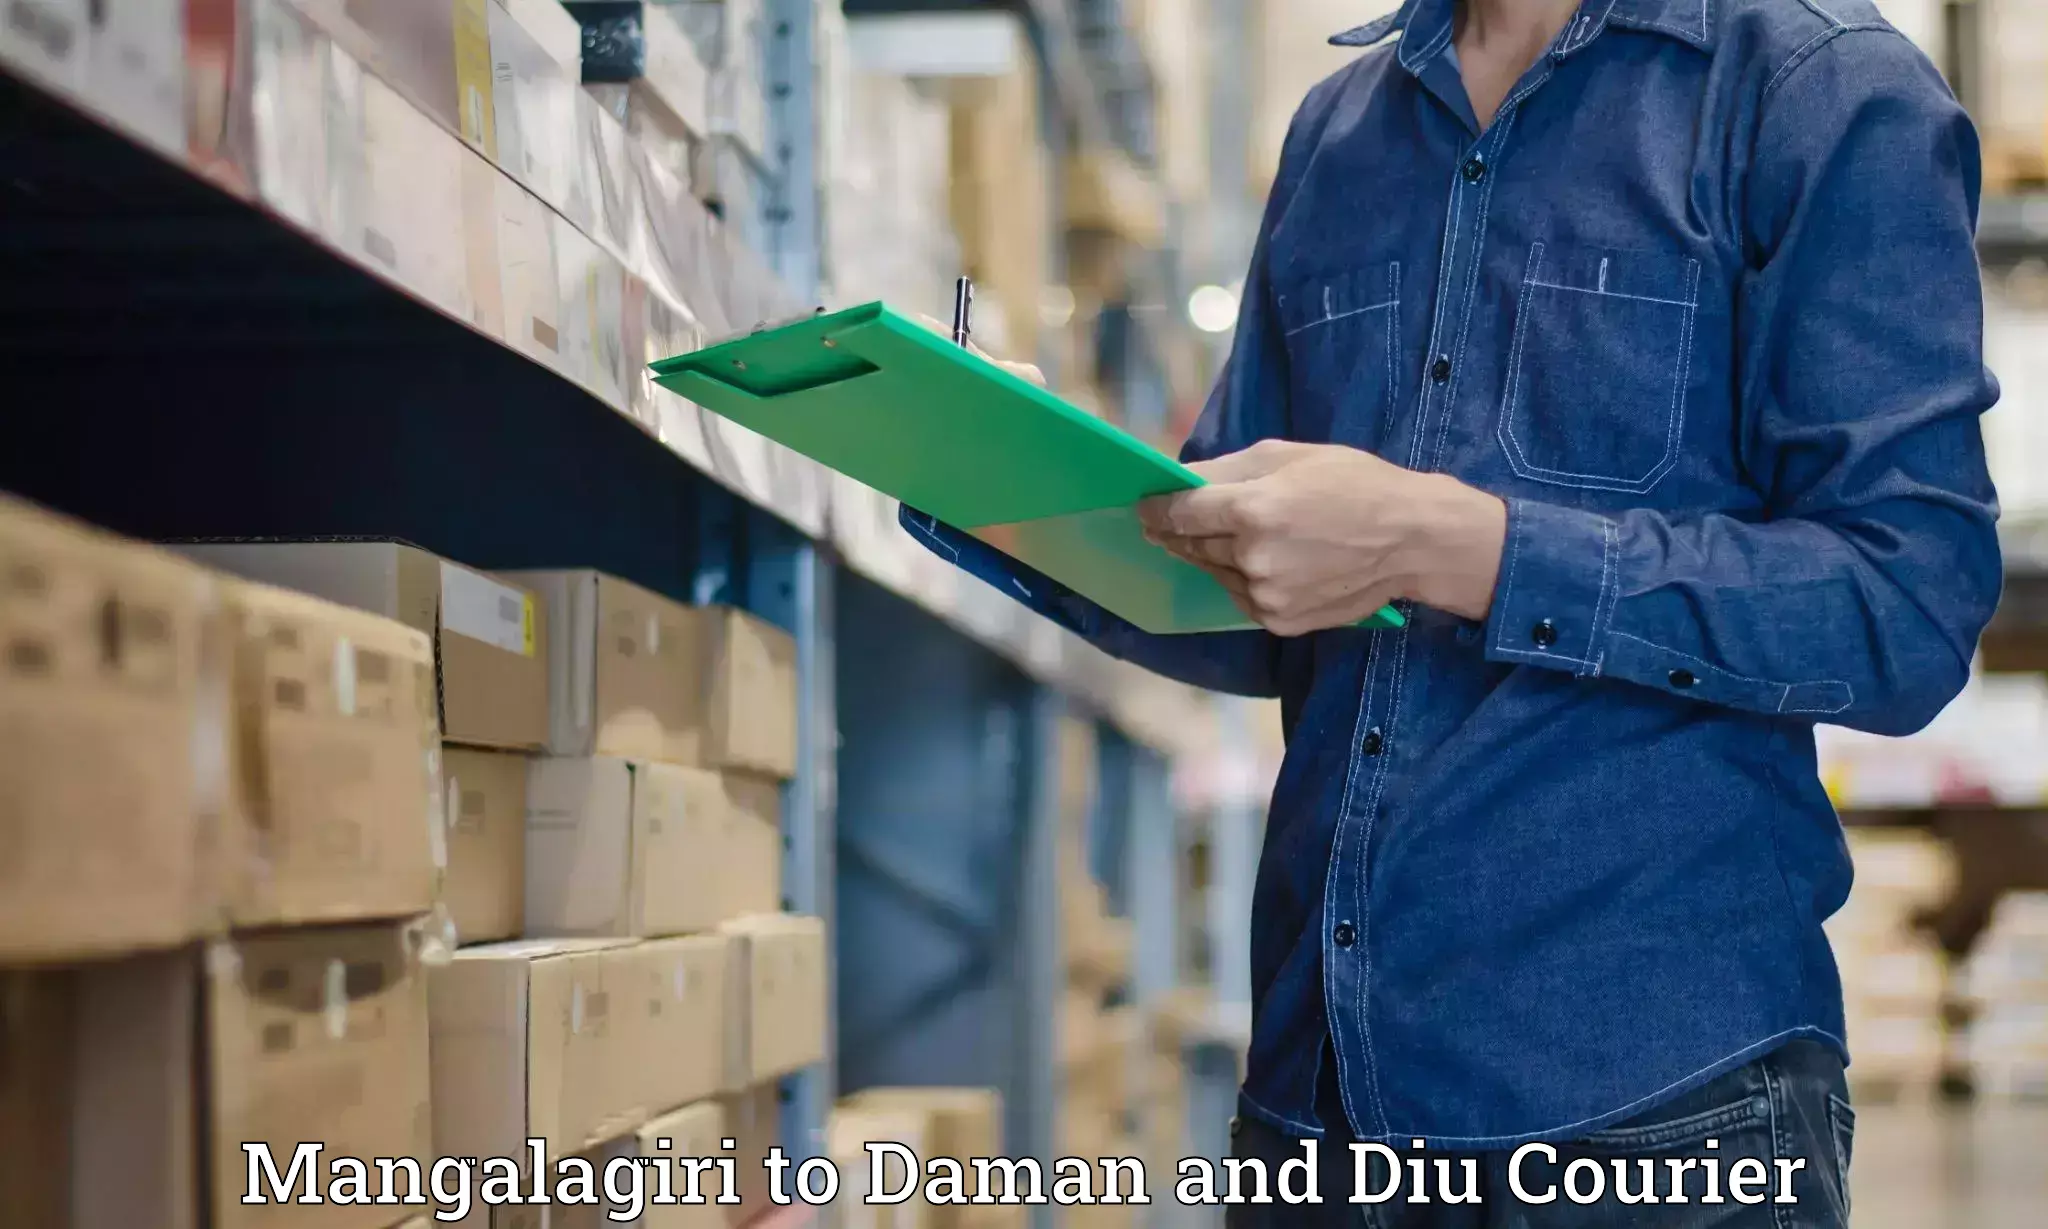 Efficient logistics management Mangalagiri to Daman and Diu